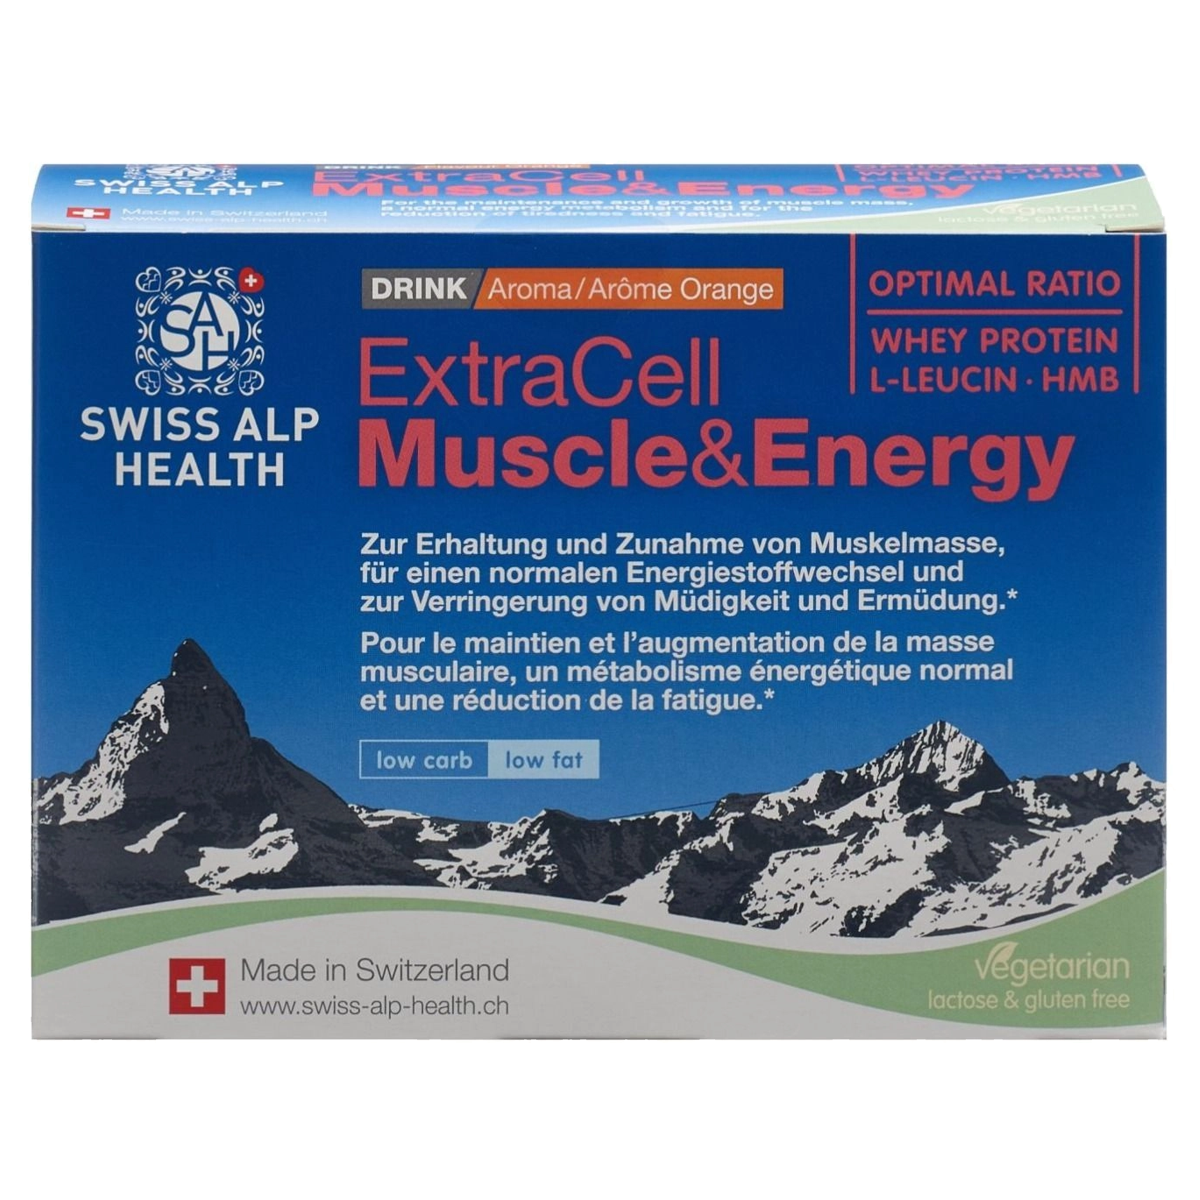 ExtraCell Muscle & Energy zur Erhaltung und Zunahme von Muskelmasse